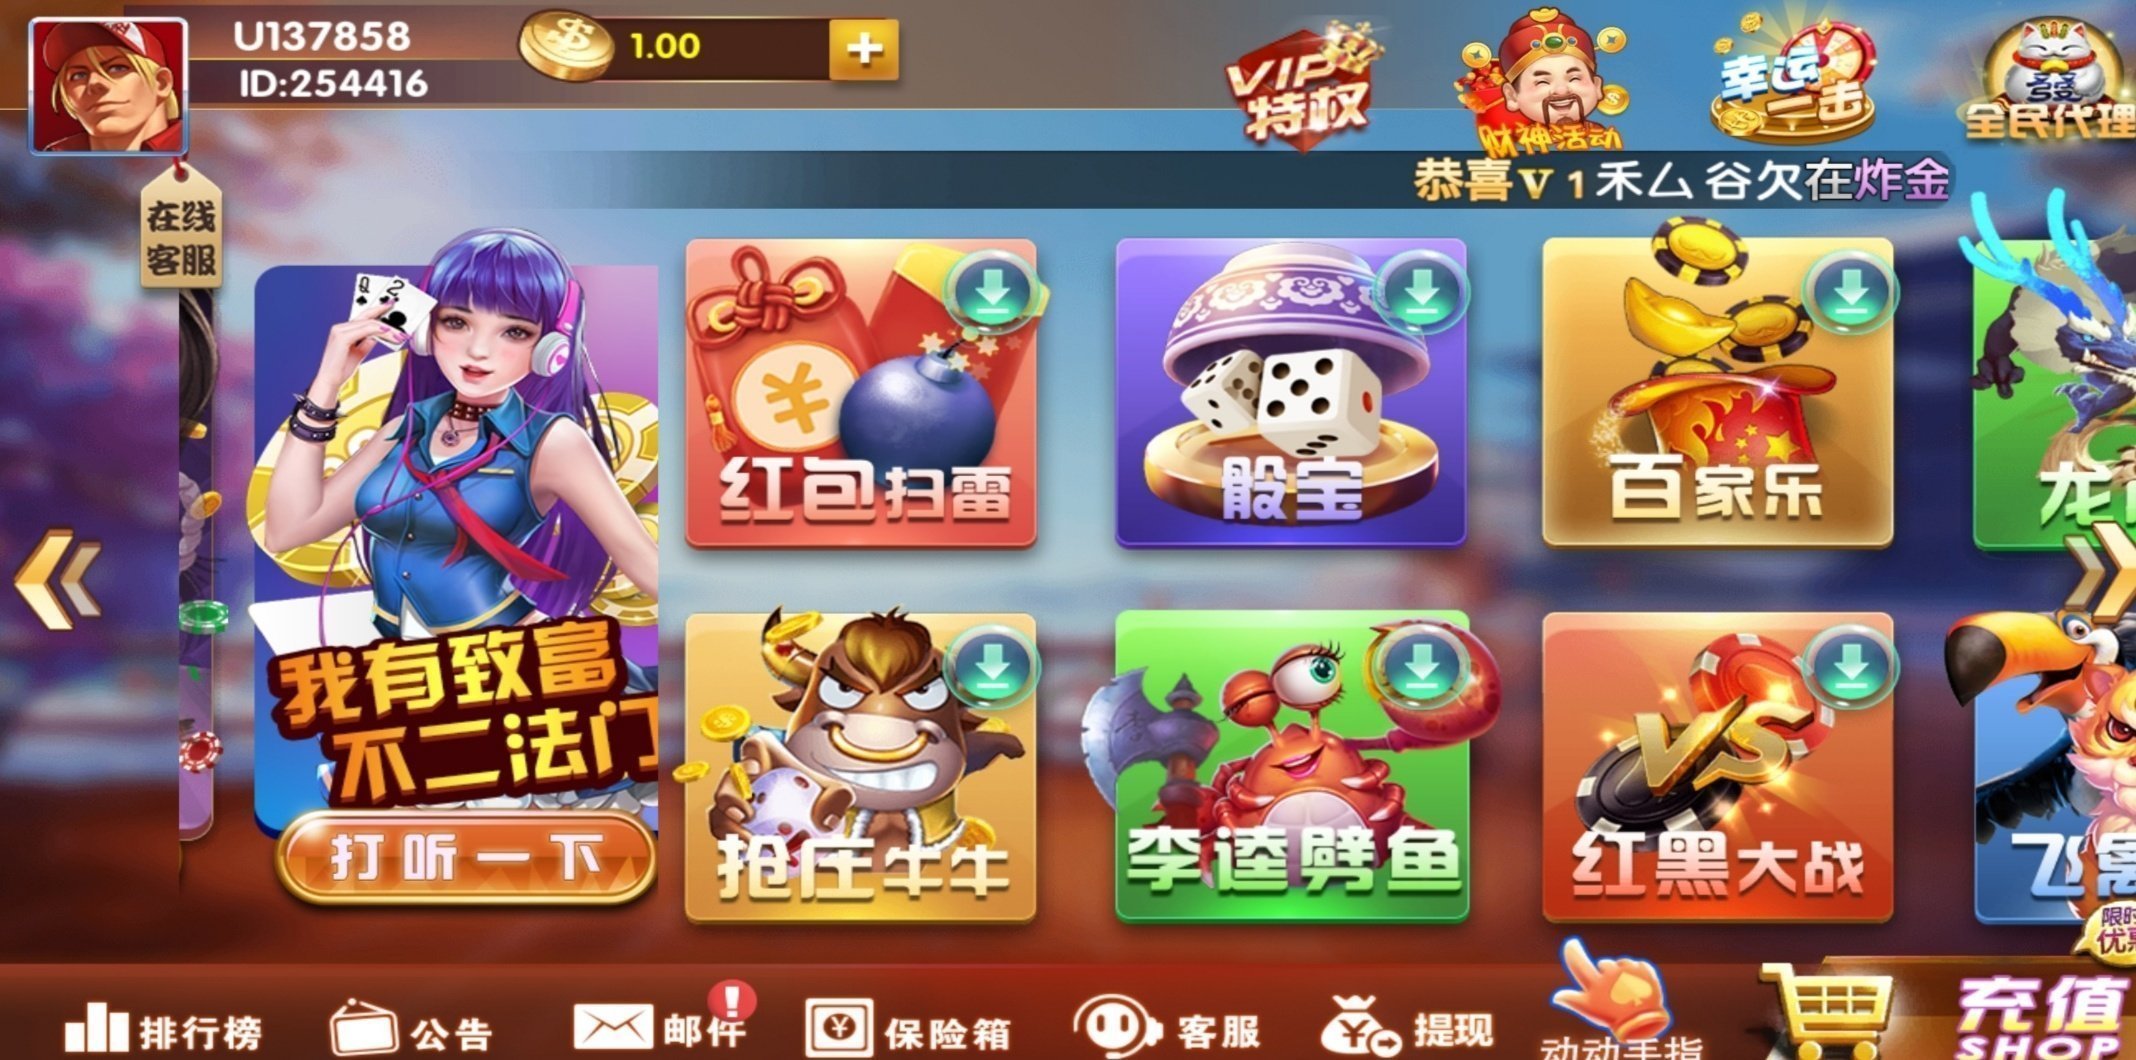 38手游app